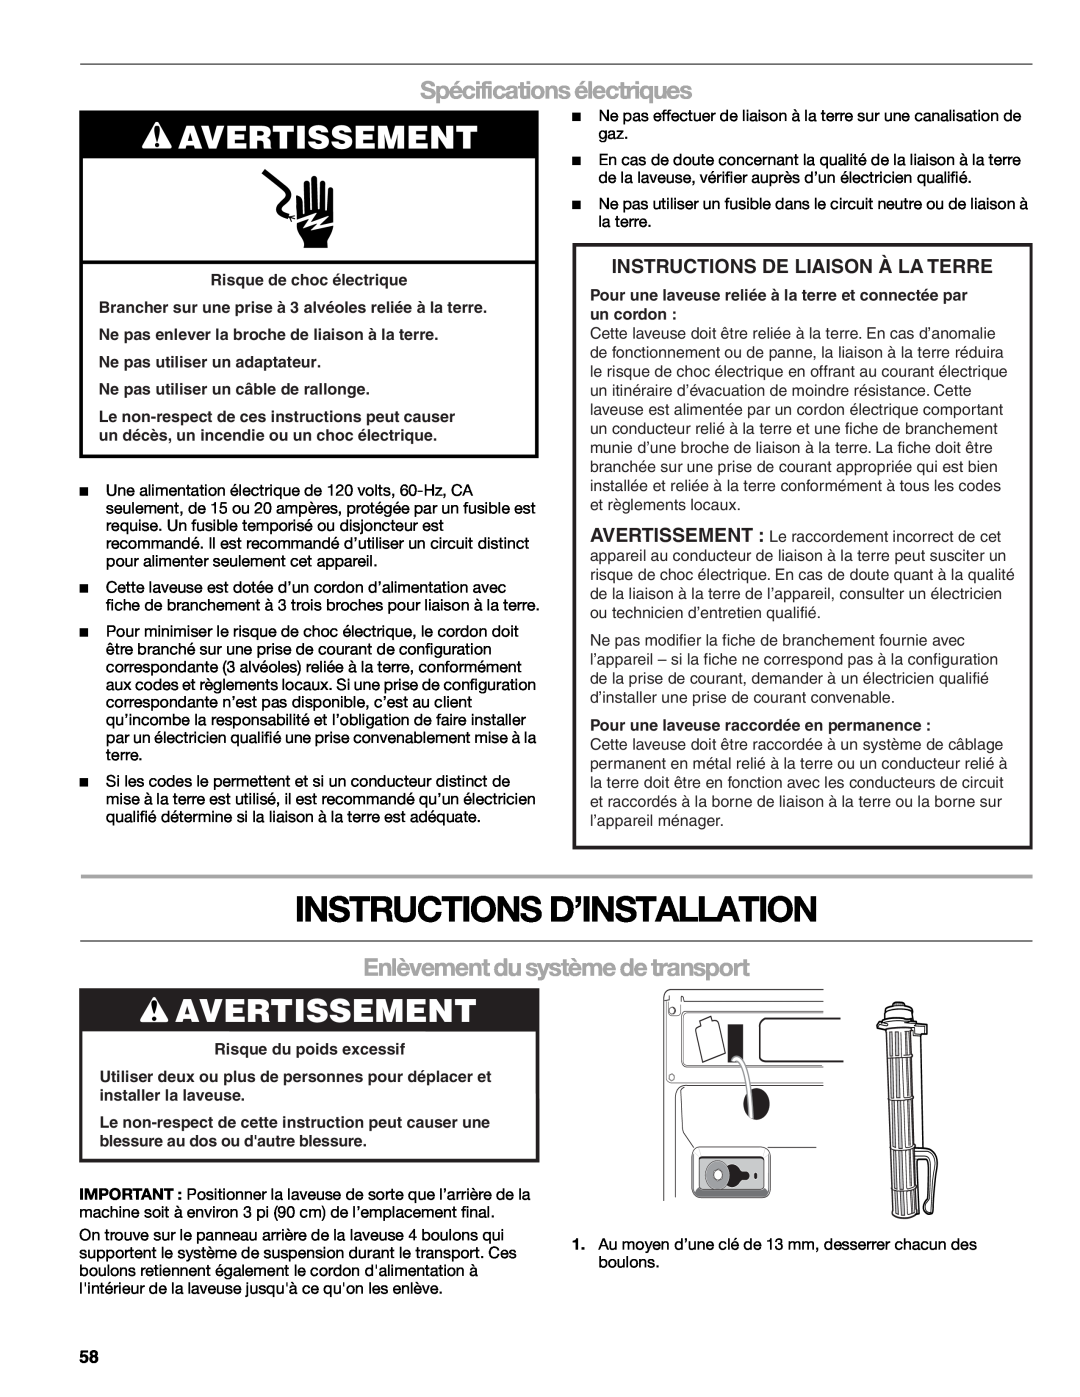 Kenmore W10133487A manual Instructions D’Installation, Avertissement, Spécifications électriques, Risque du poids excessif 